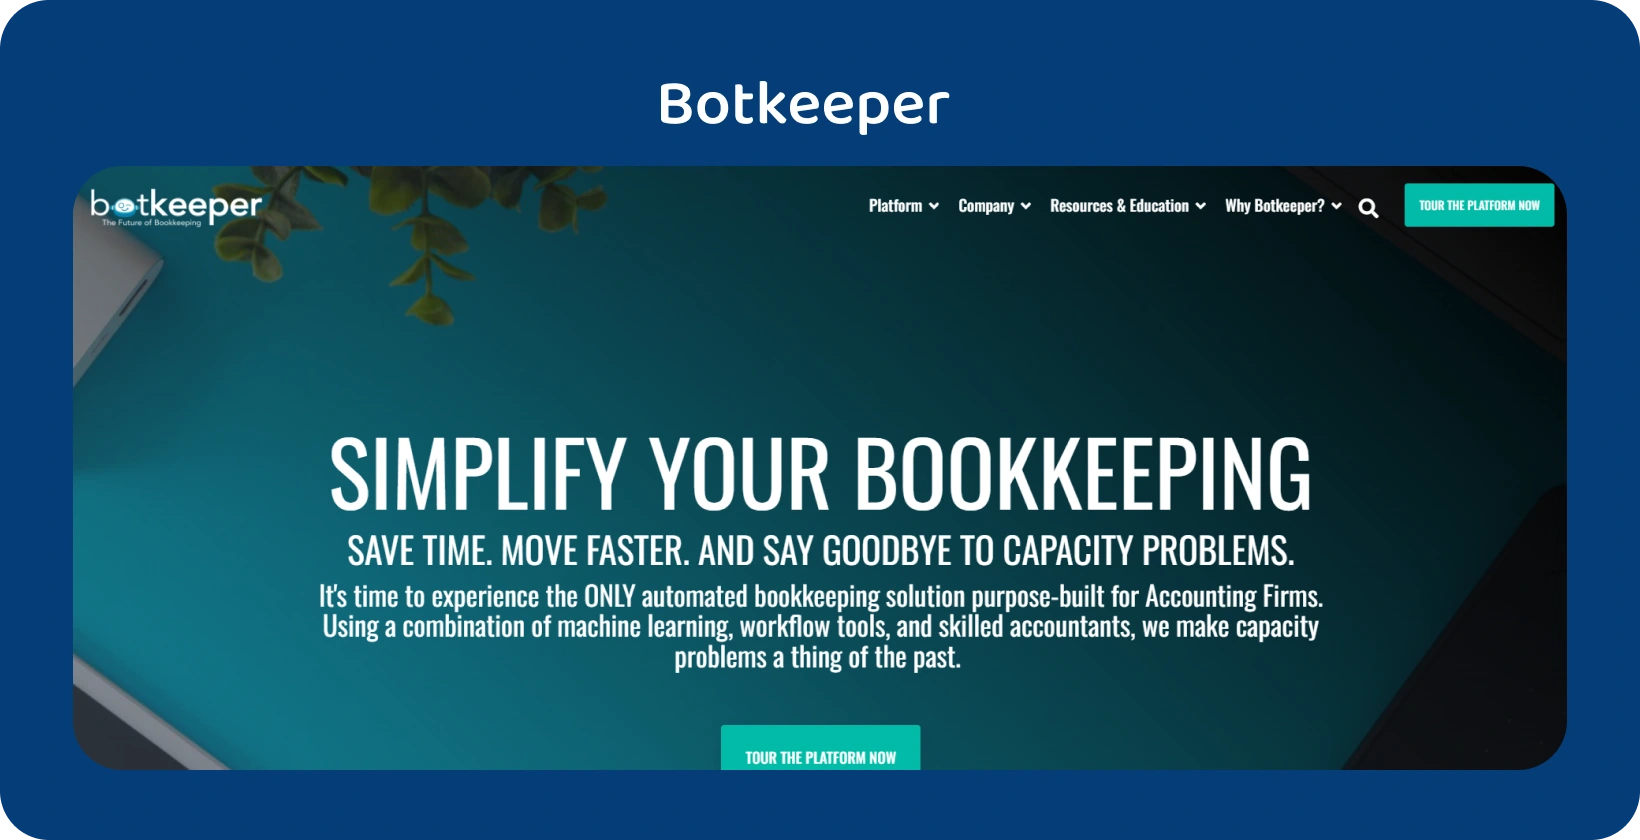 Botkeeper mājas lapā ir uzsvērta grāmatvedības vienkāršošana grāmatvežiem, izmantojot automatizācijas tehnoloģiju.